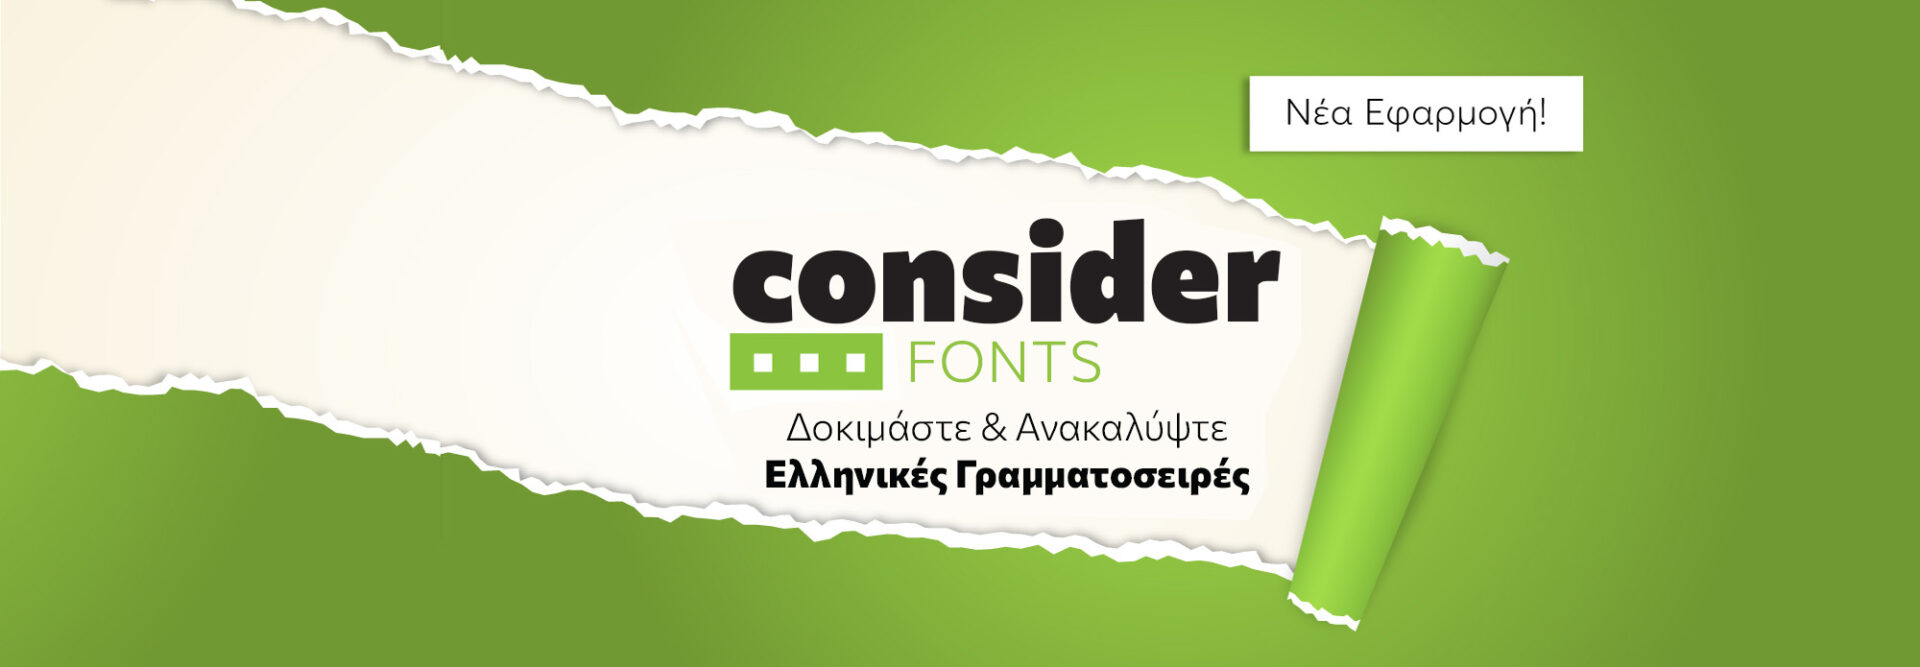 consider-fonts-slide-1